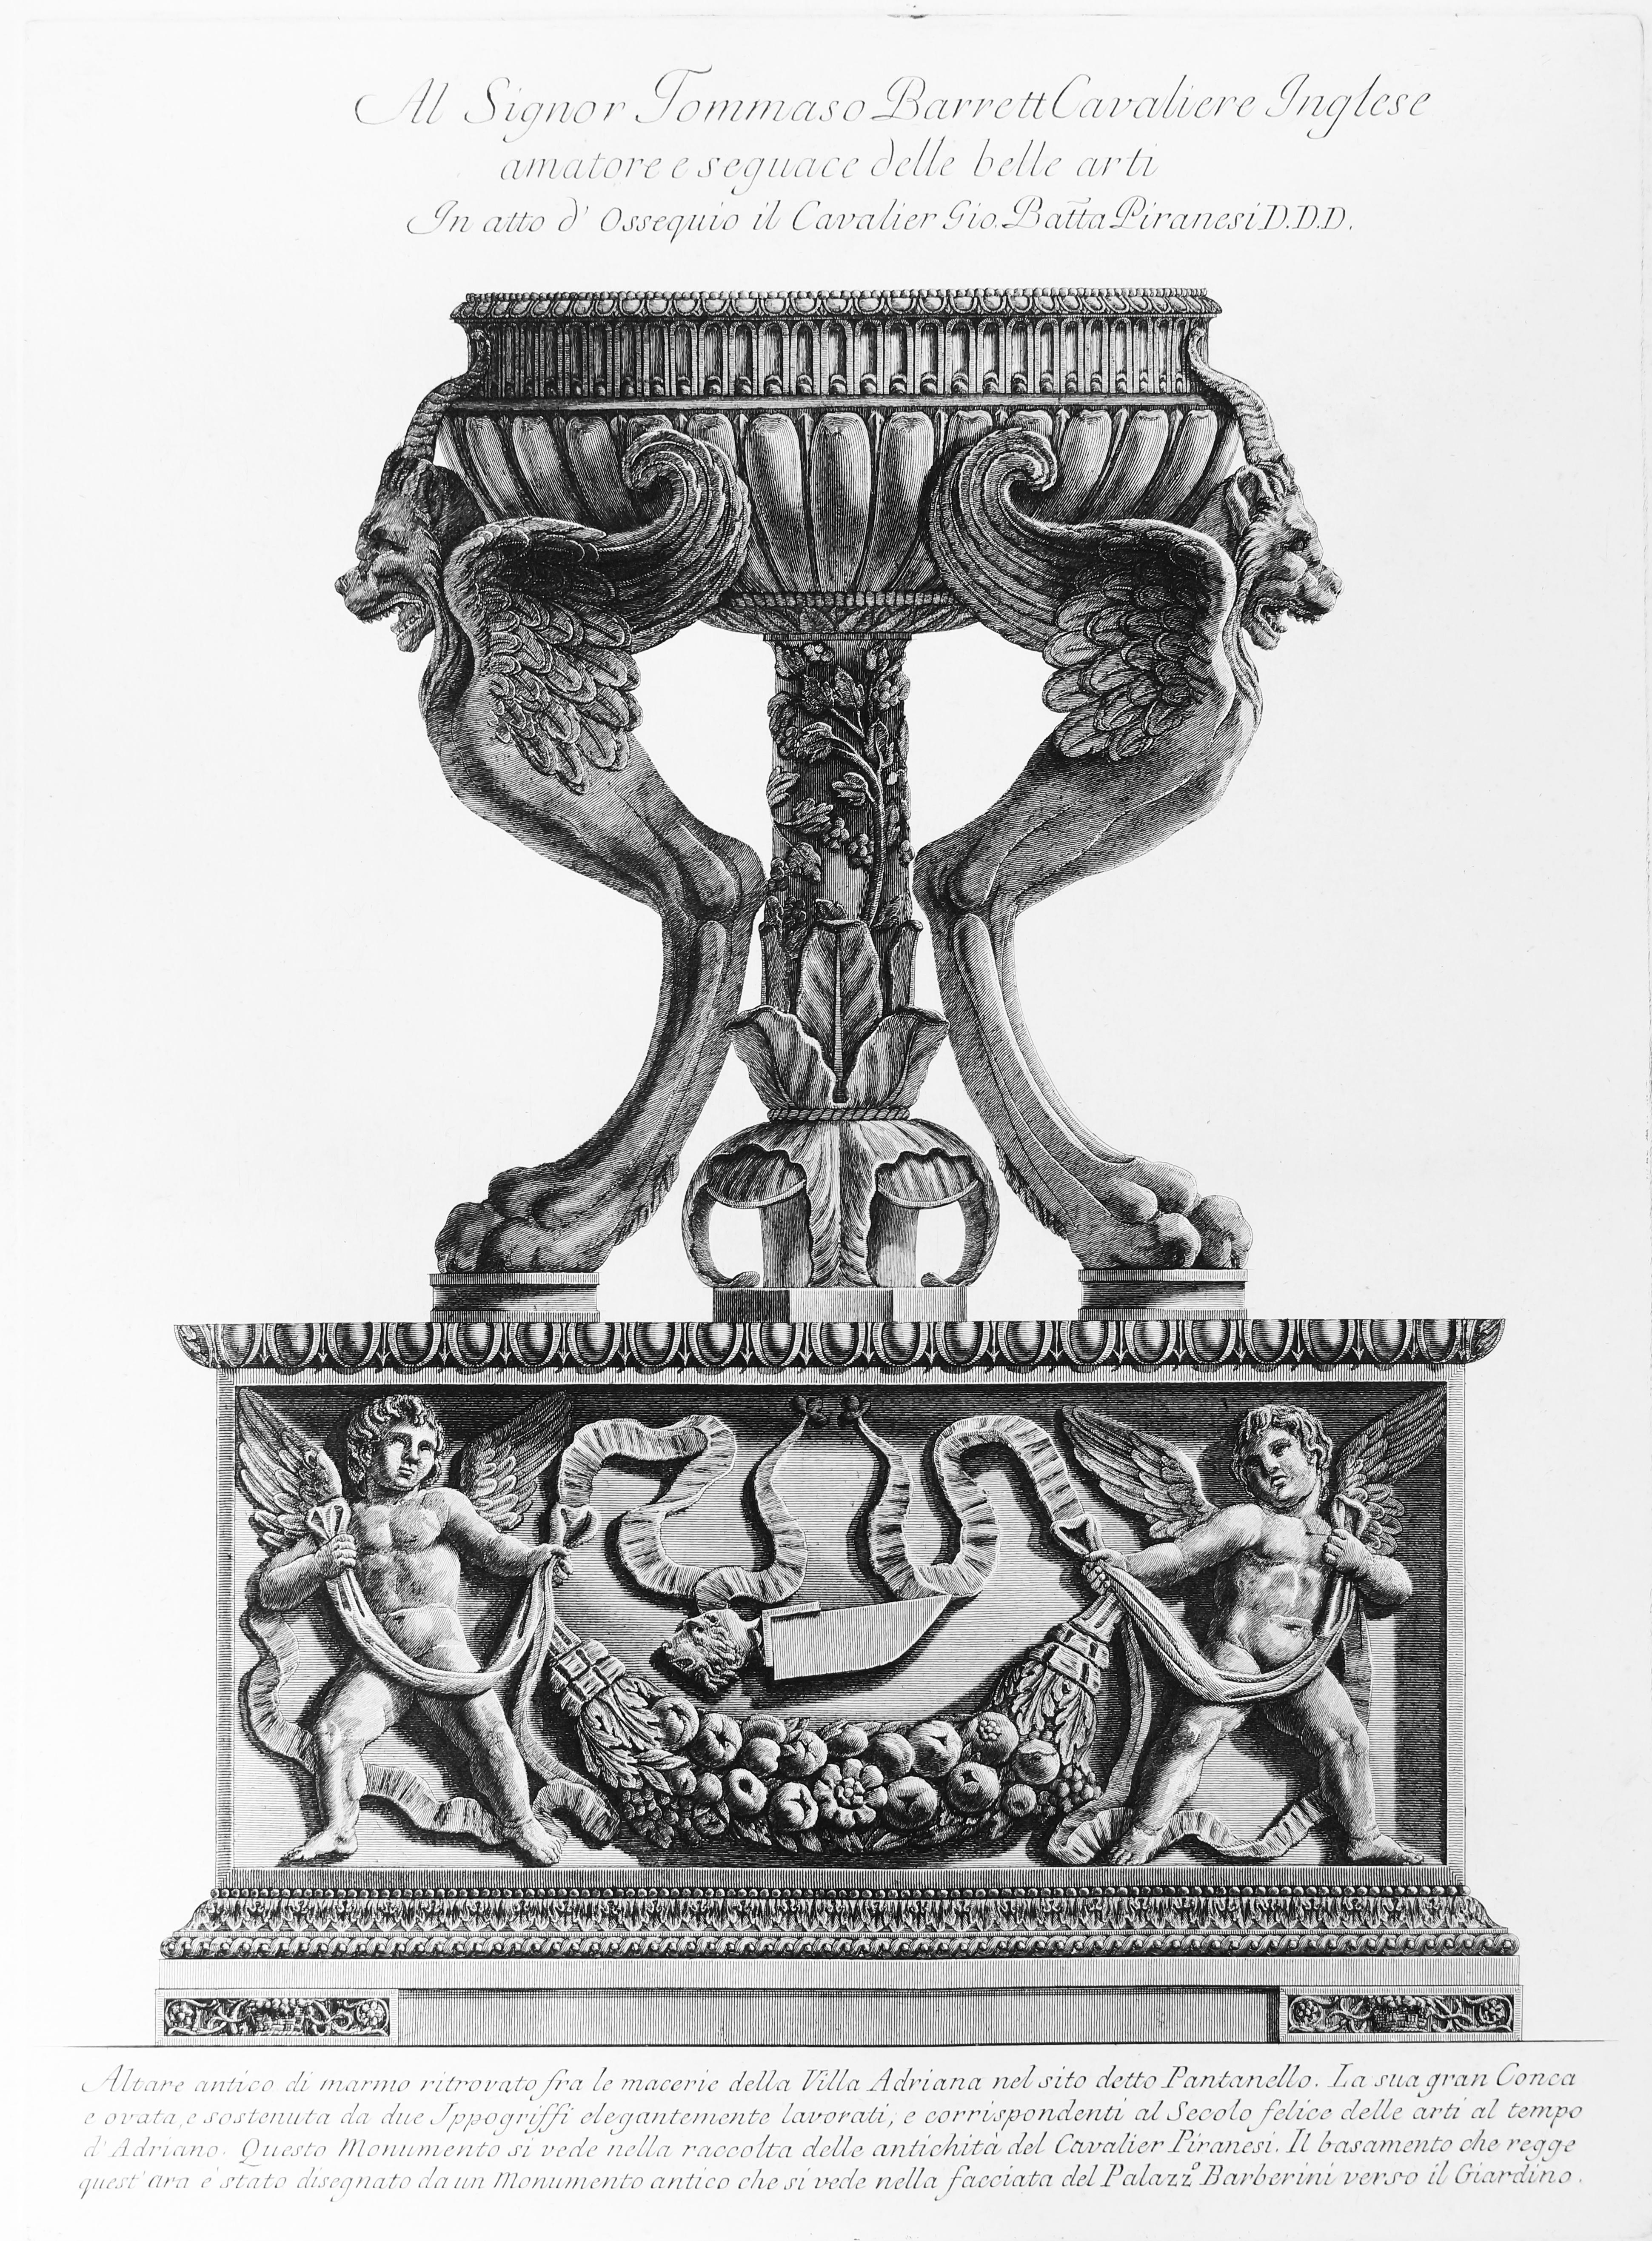 Giovanni Battista Piranesi Figurative Print - Altare antico di marmo ritrovato fra le macerie della Villa Adriana  - 1778